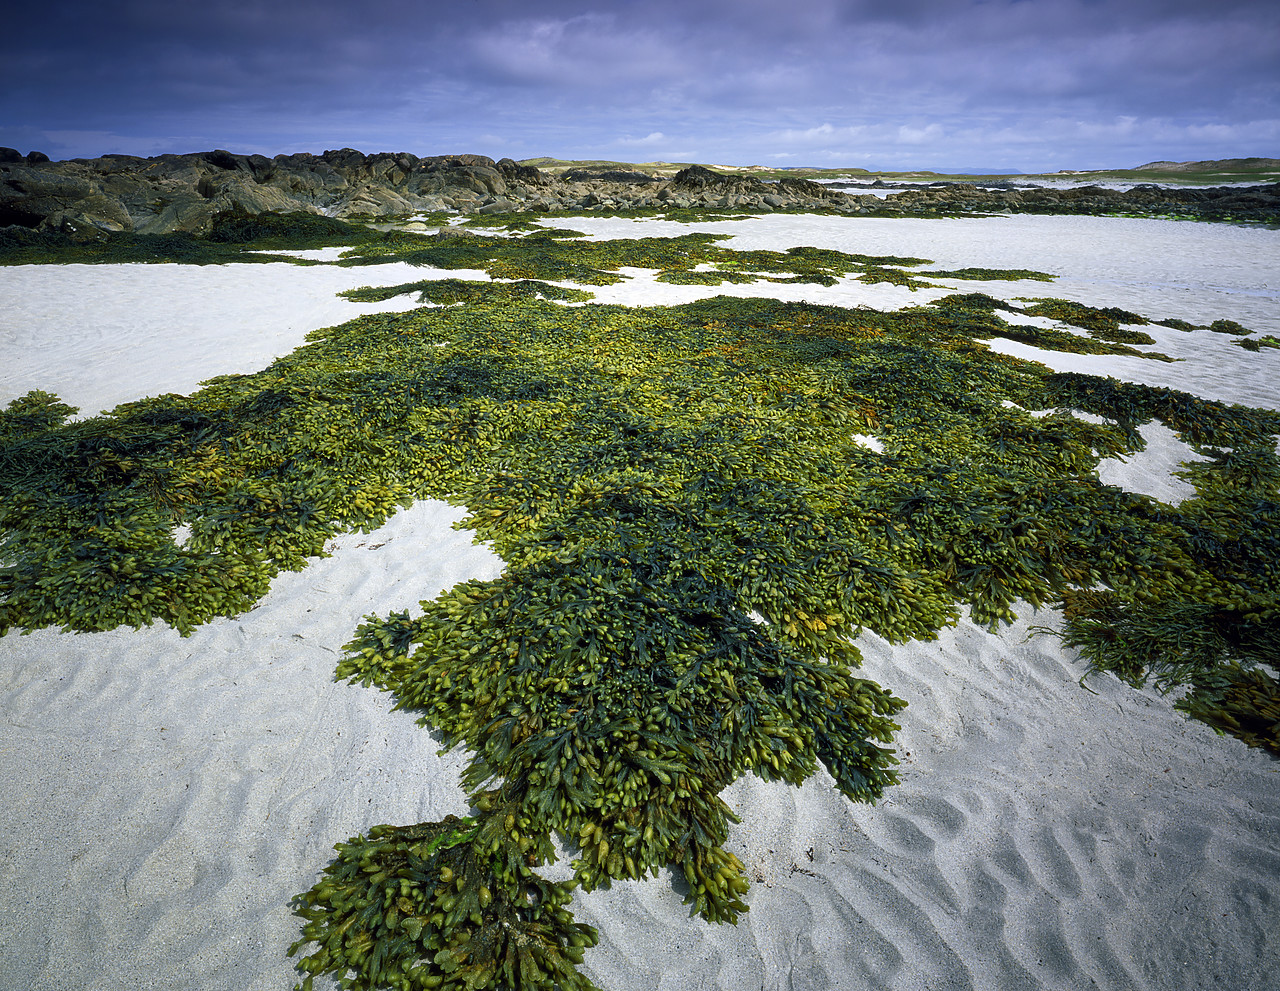 #030280-2 - Bladderwrack Sea Weed on Beach, Doonloughan, Co. Galway, Ireland